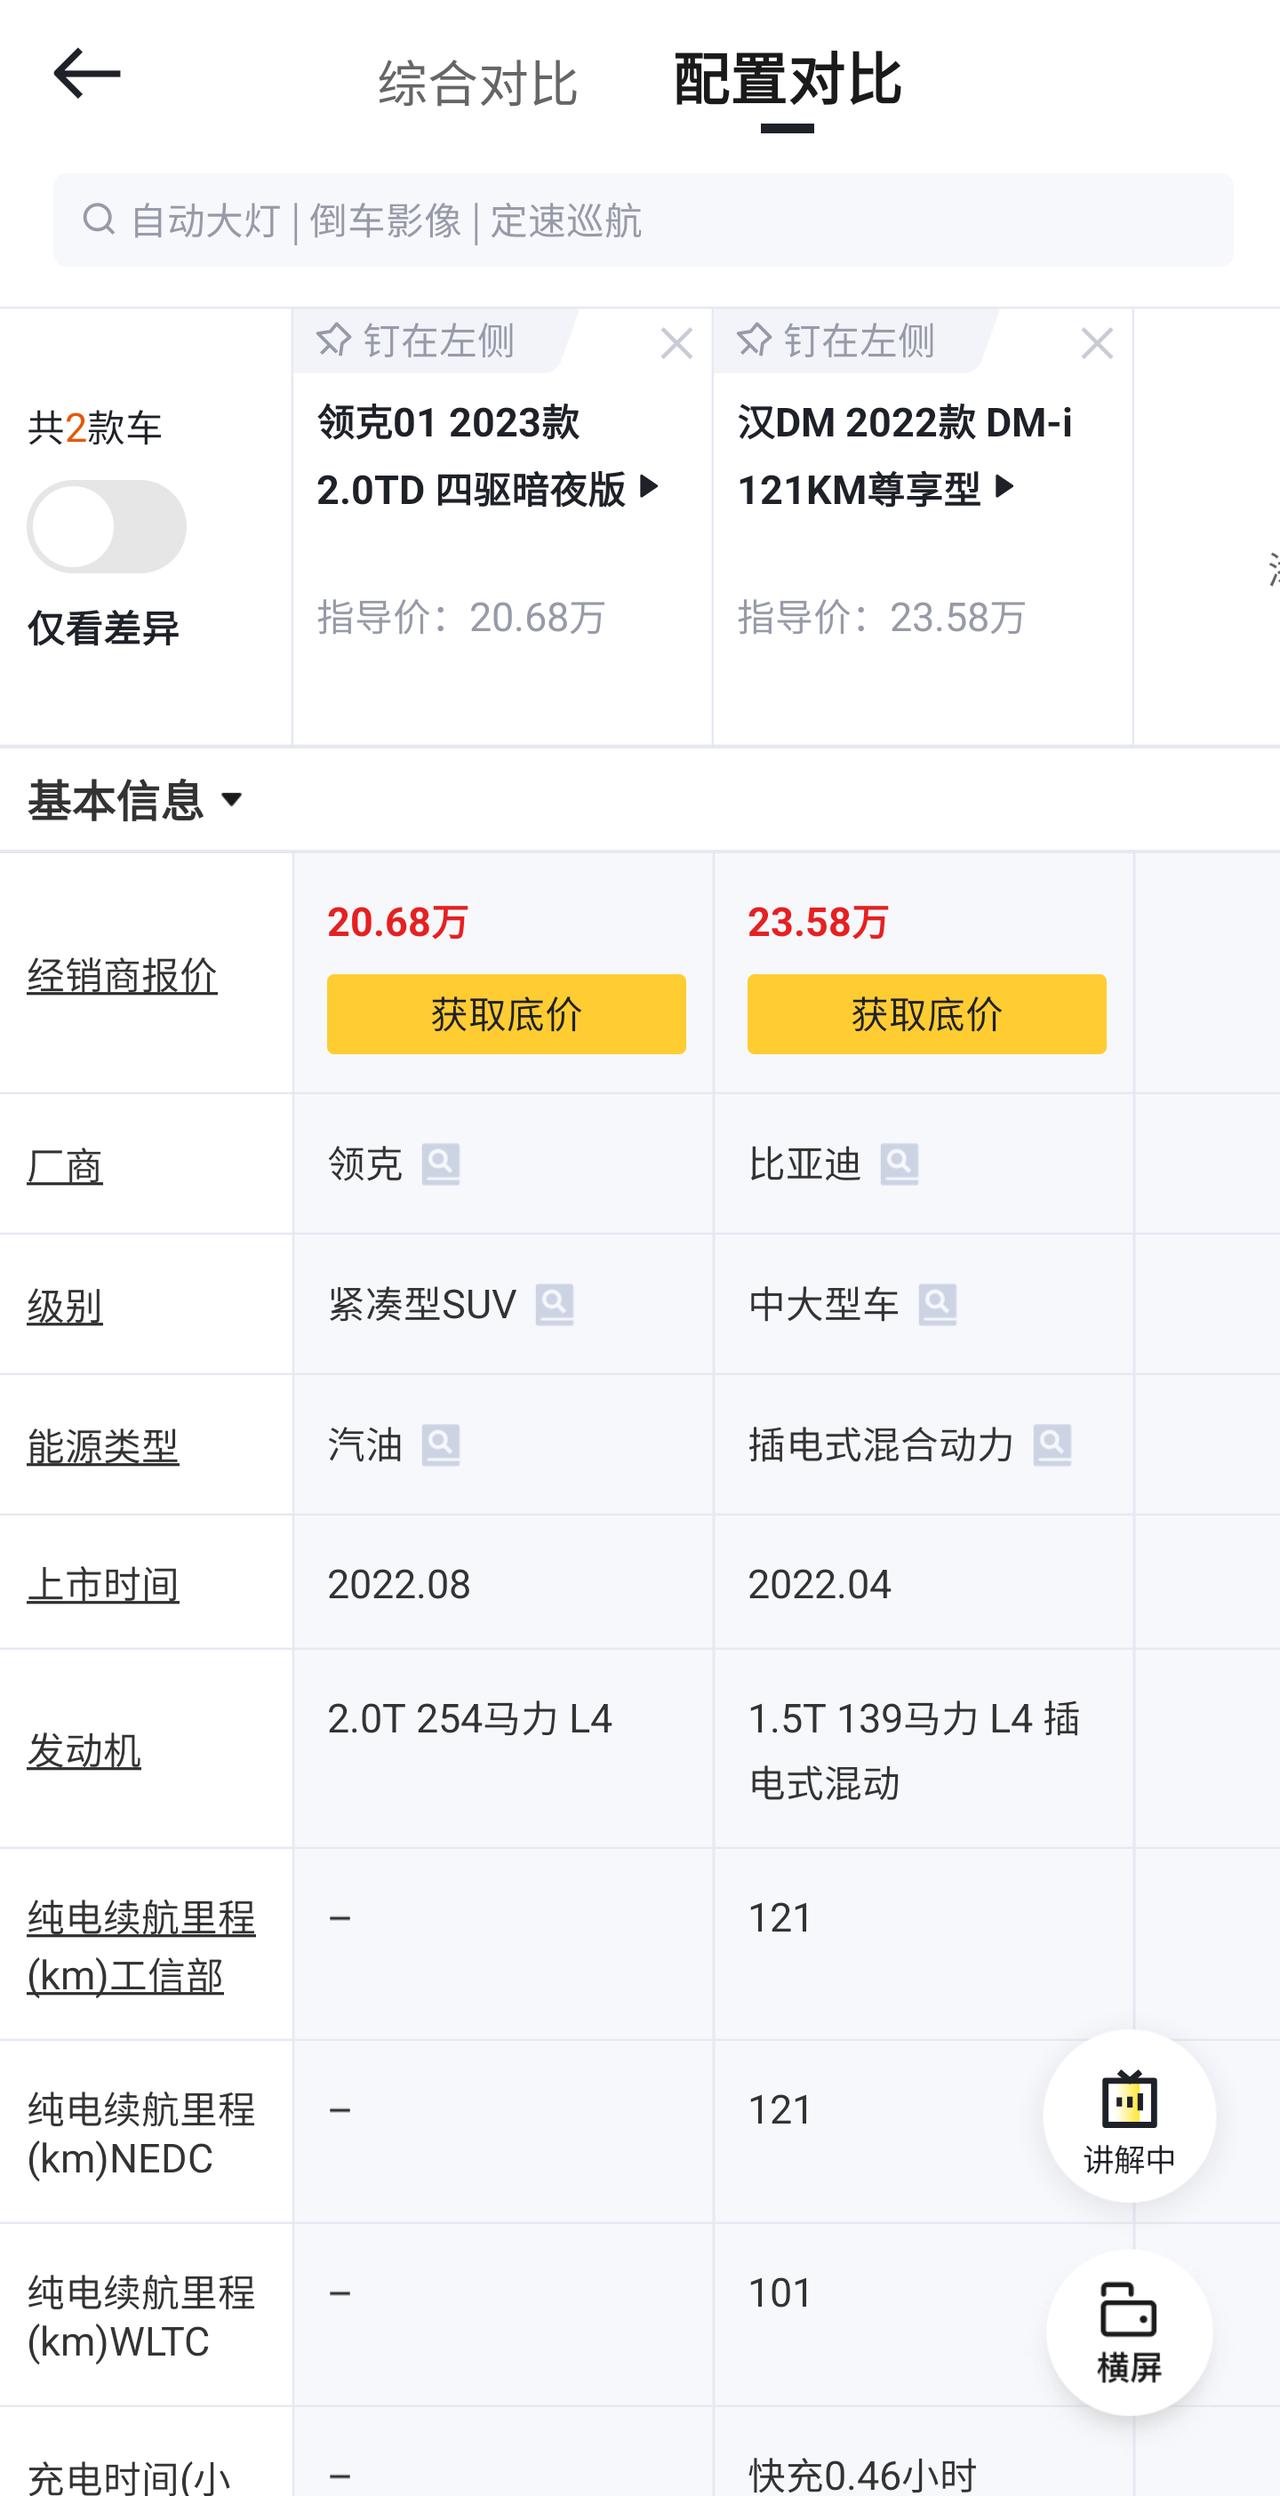 比亚迪汉DM 很纠结  求推荐 坐标上海，预算十万，25w可以买混动，20w可以买油车（再十万拍牌），今年27，考虑过两